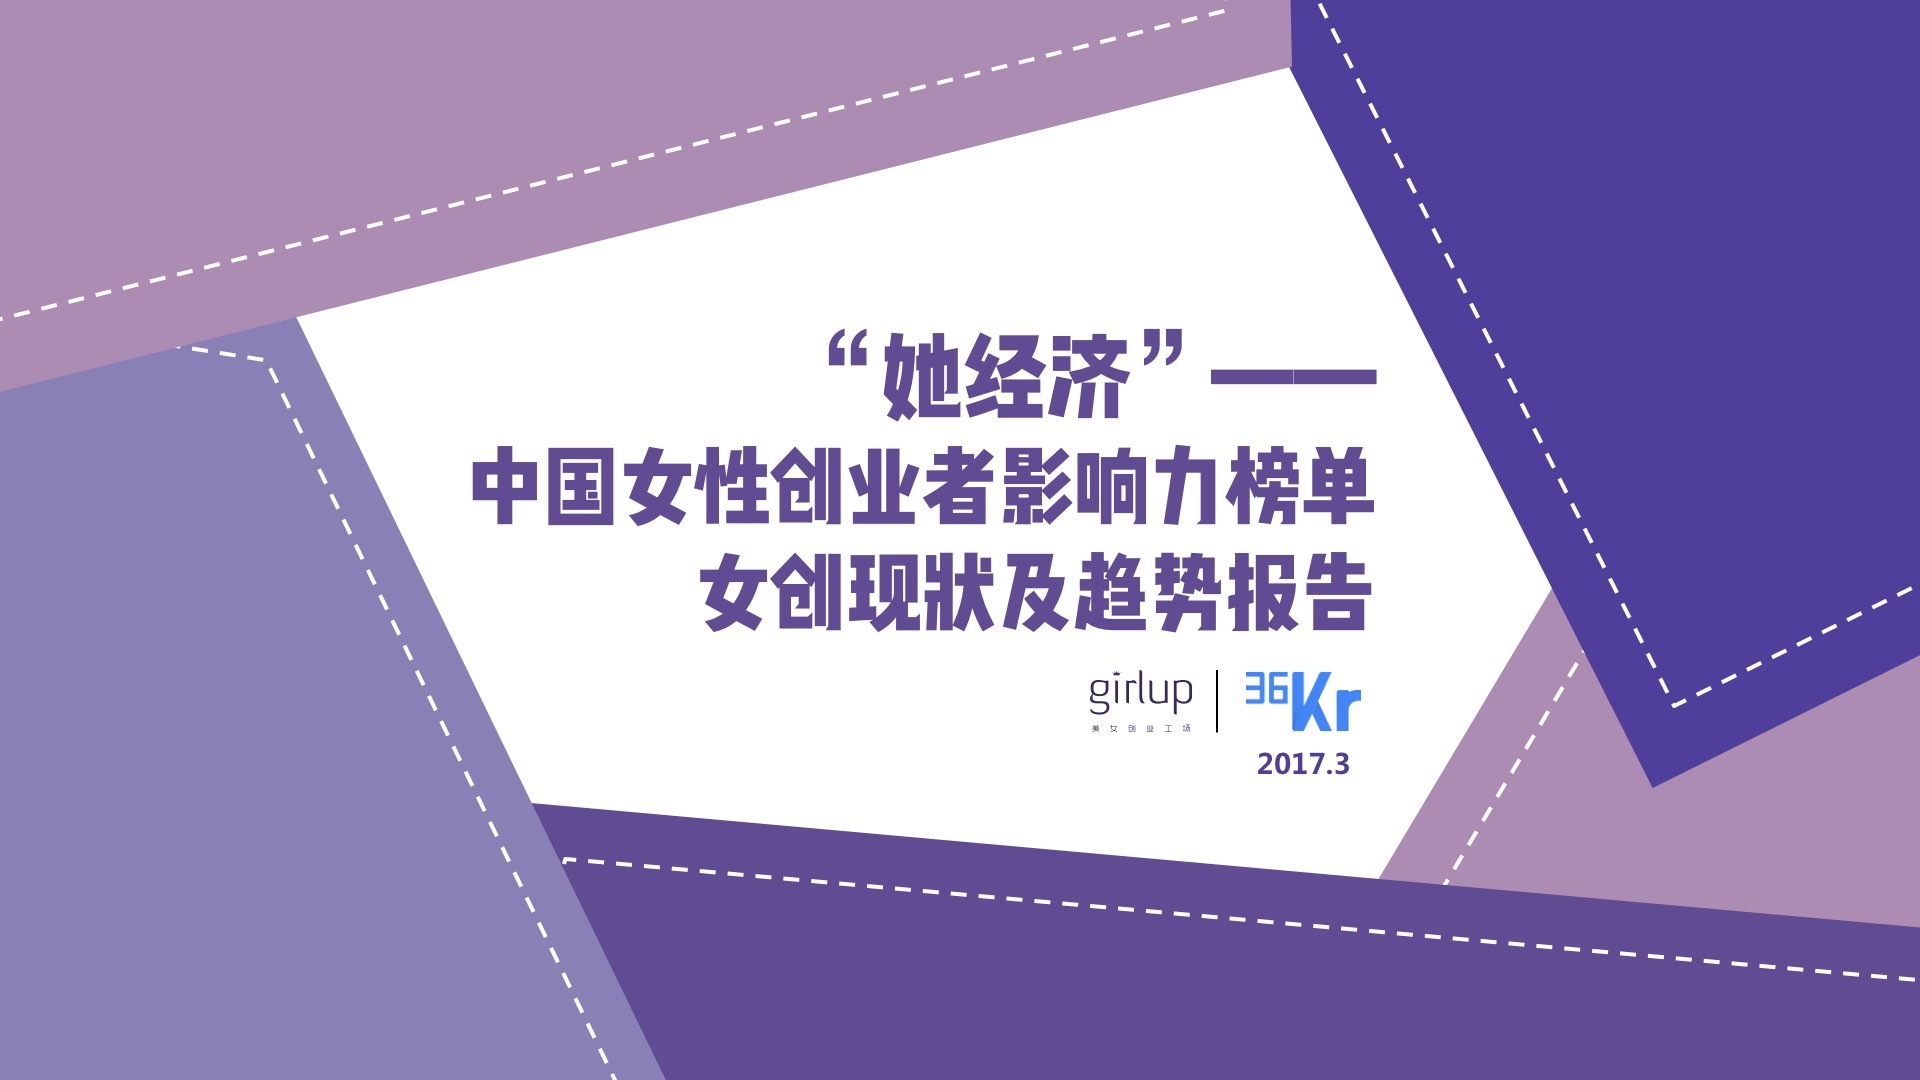 《她经济》——中国女企业家现状与趋势报告-首码项目网-创业网-全球领先的创业项目网站-淘灵感首码网